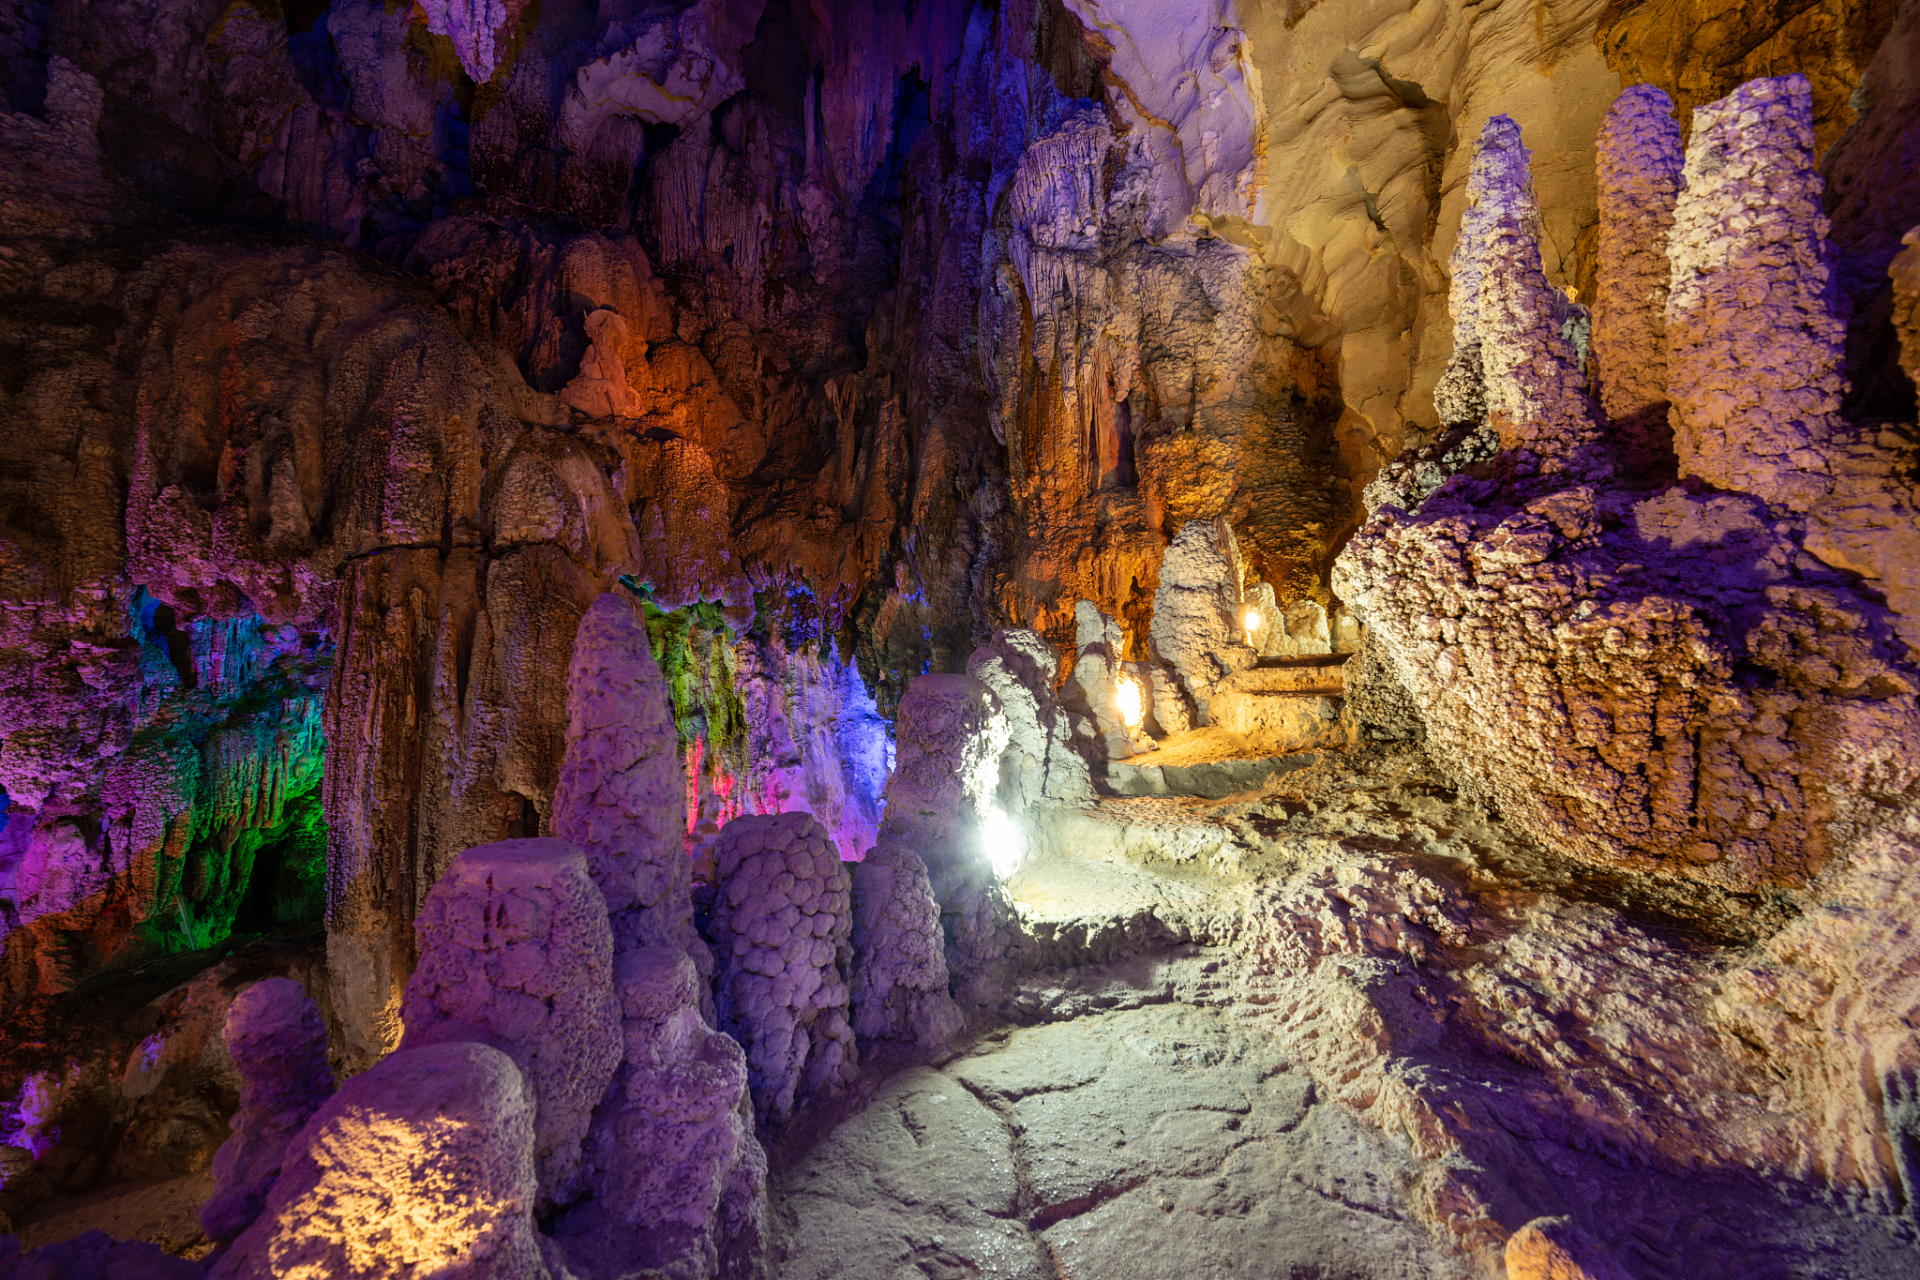 龙宫仙境,原名龙宫洞,位于广西大新县那岭乡,距县城18公里,为喀斯特